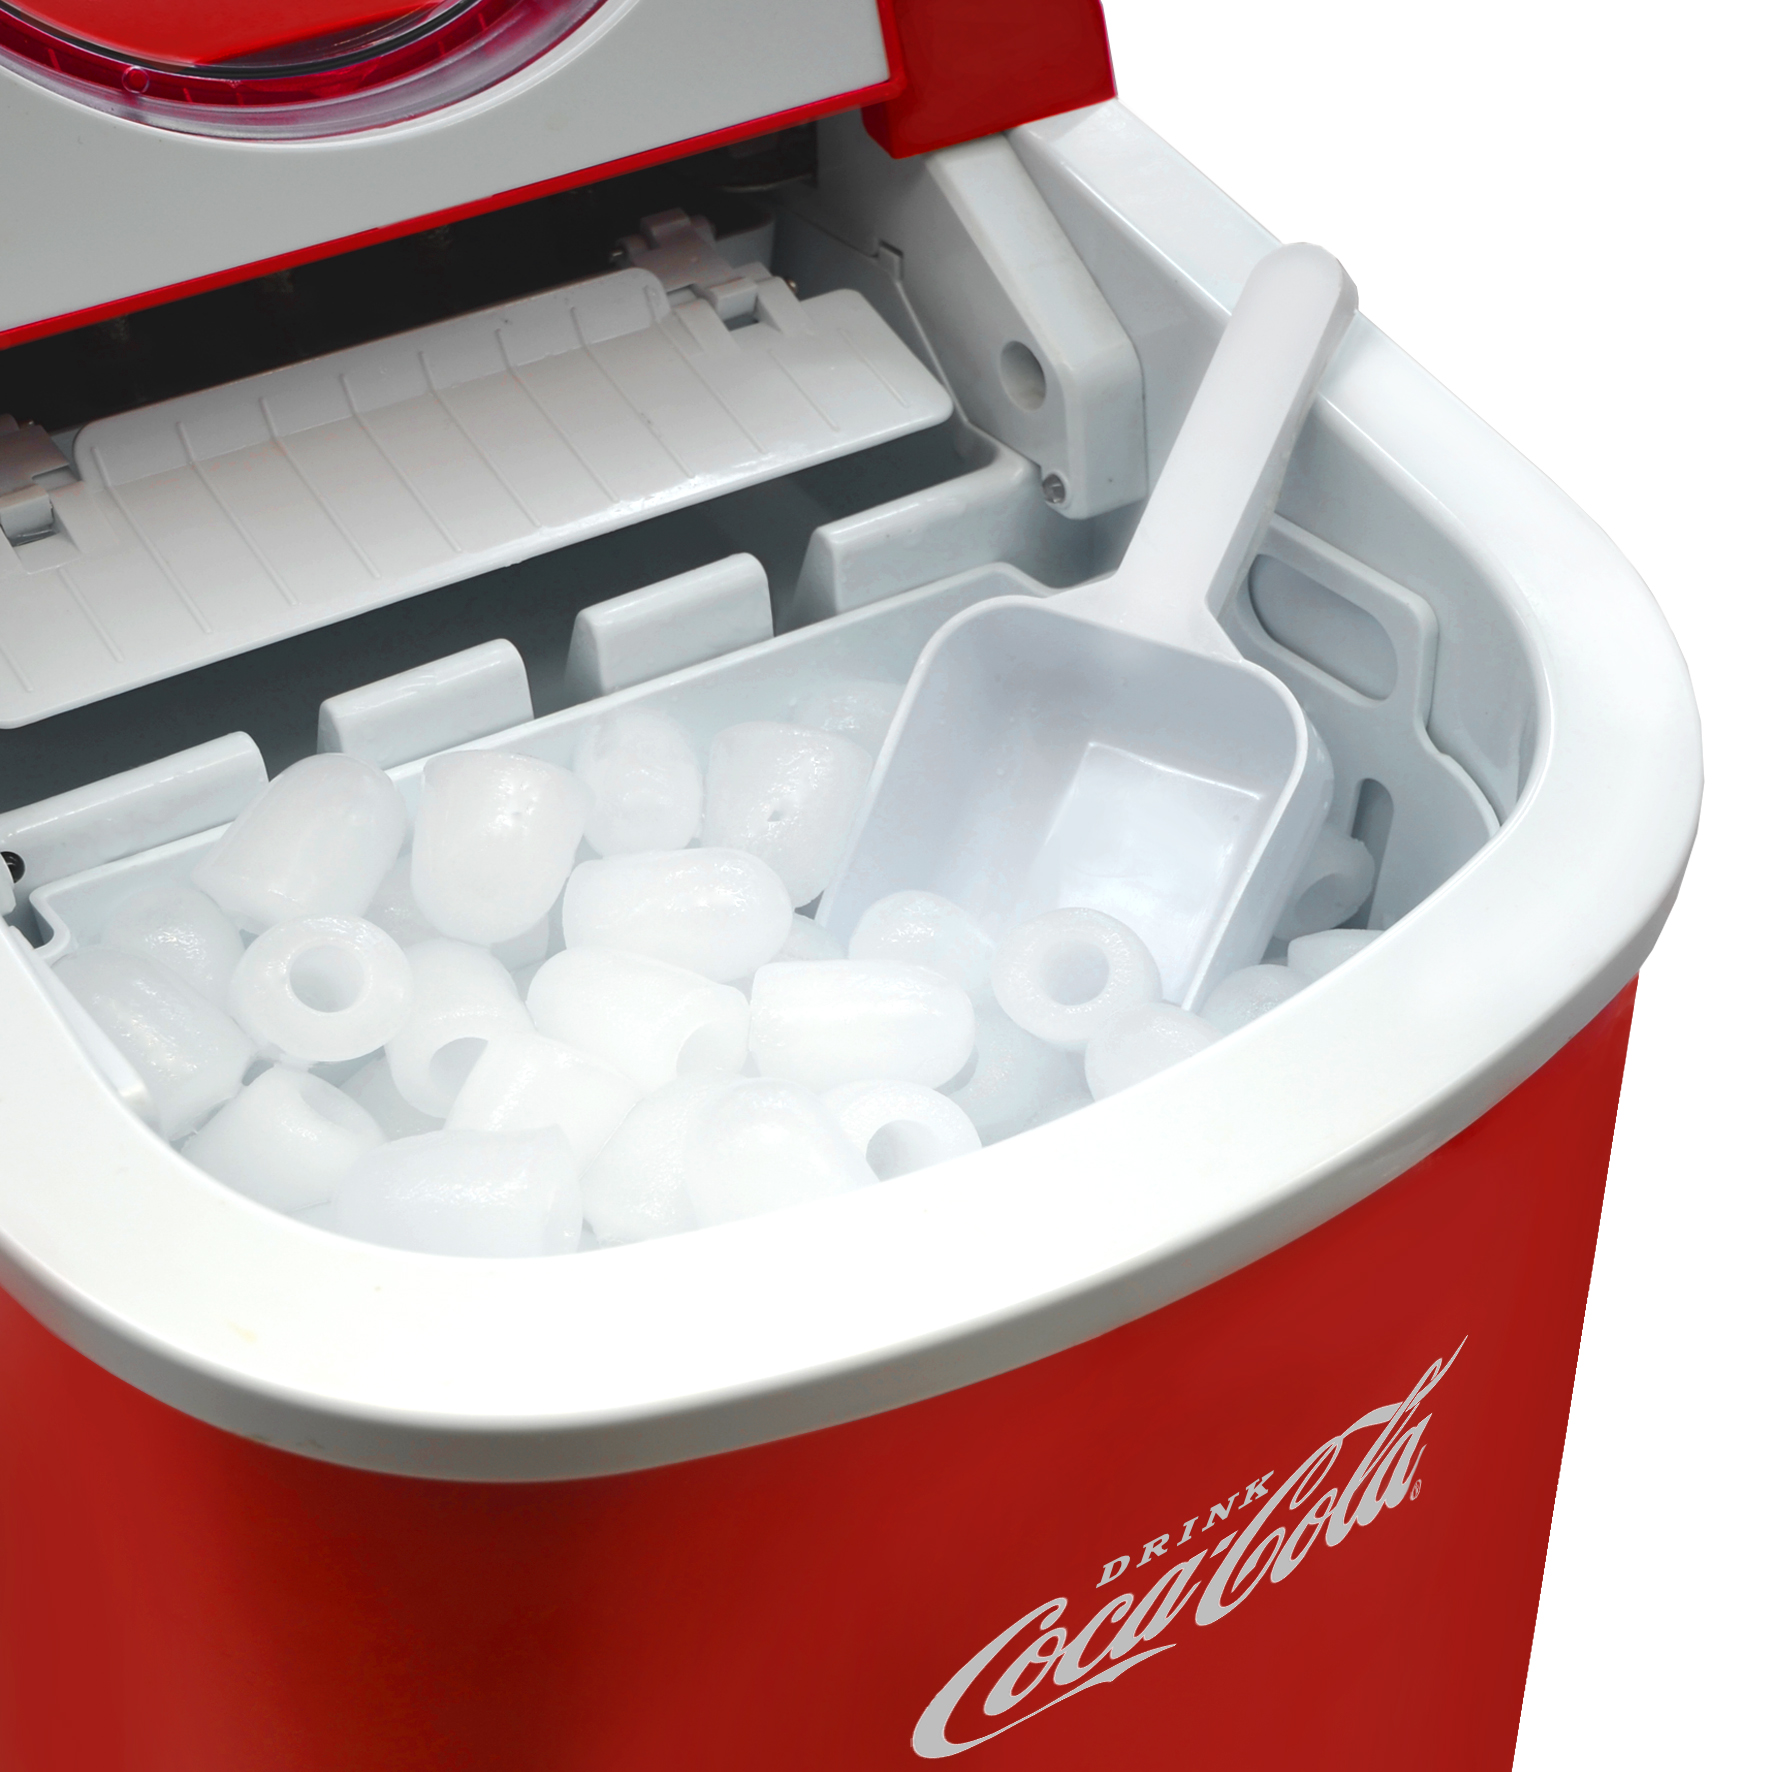 kg, leise, Ice (100 2 Eiswürfelgrößen 12 SALCO Eiswürfelmaschine, rot) Coca-Cola Eiswürfelmaschine Maker, Selbstreinigend, Watt,